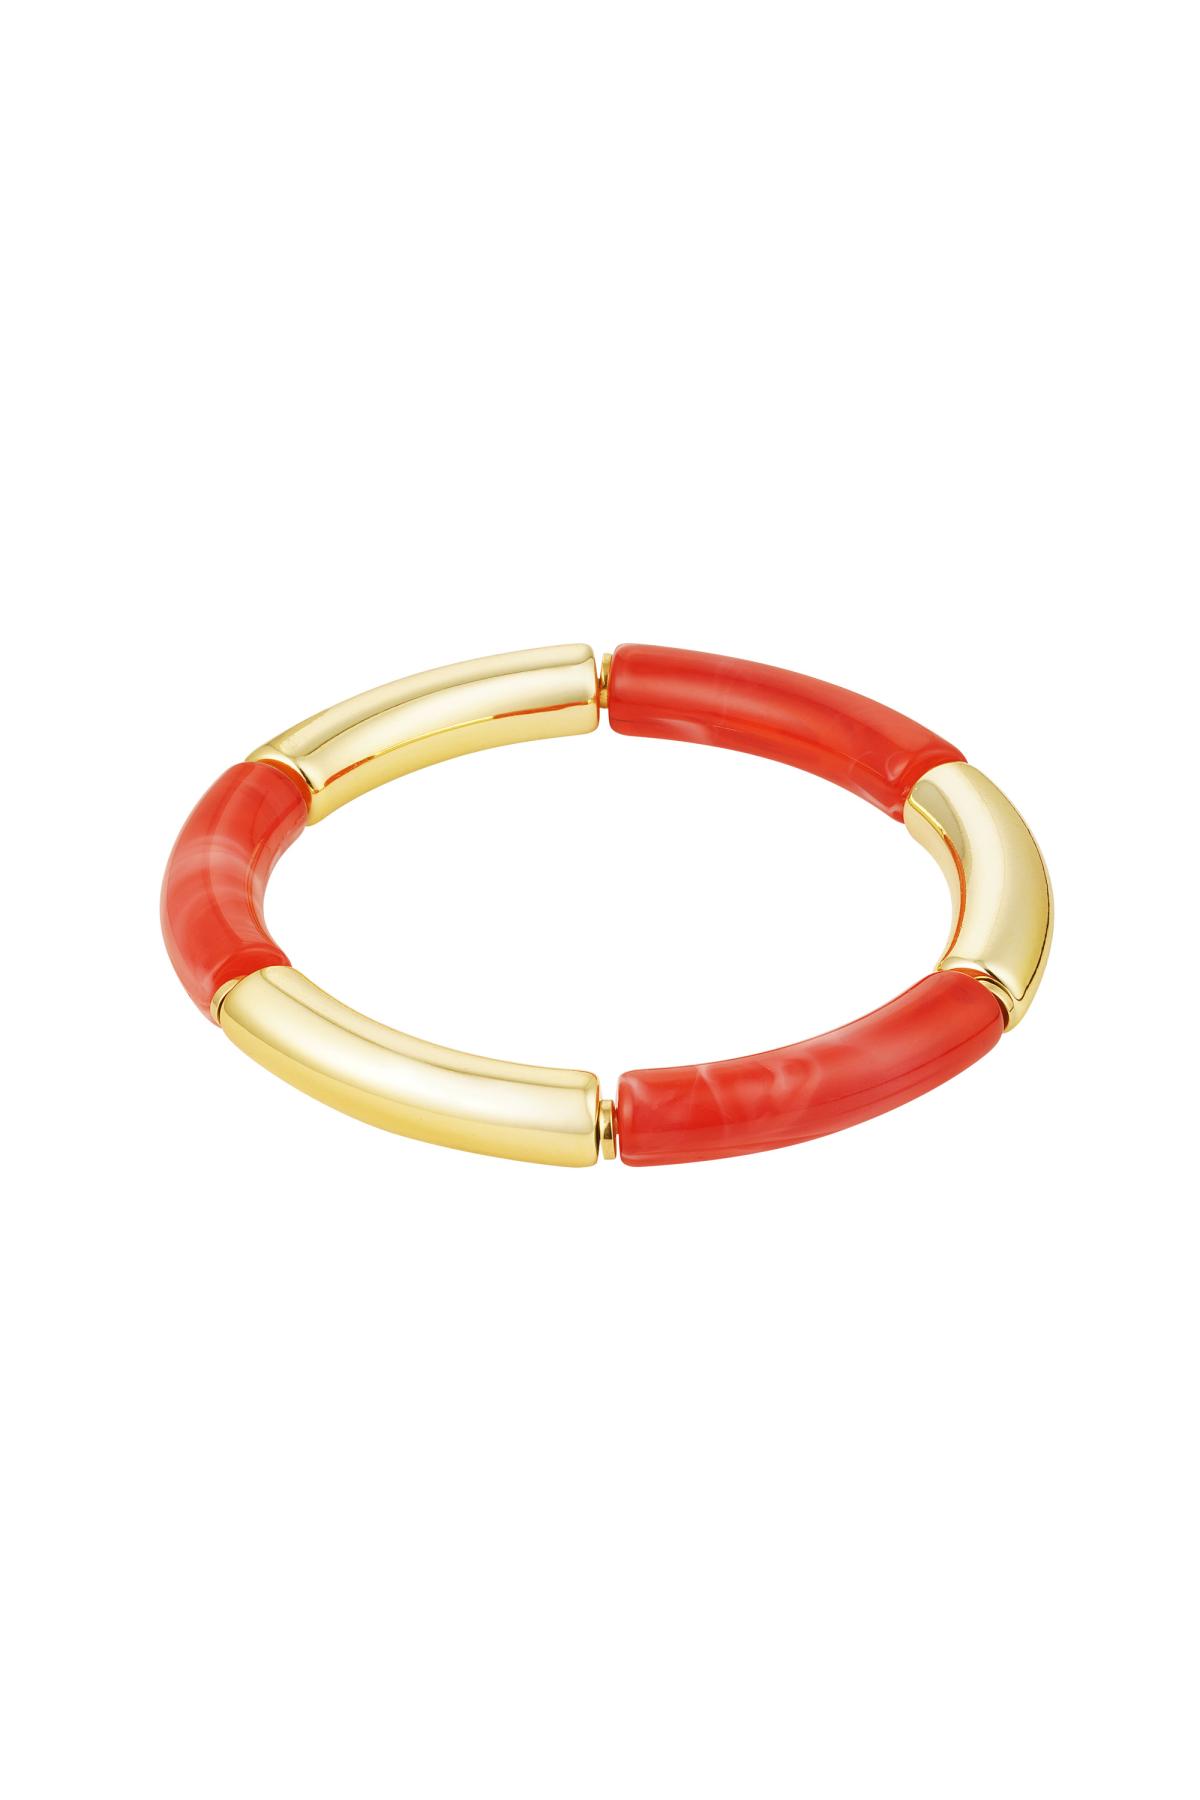 Pulsera tubo oro/color Rojo Acrílico